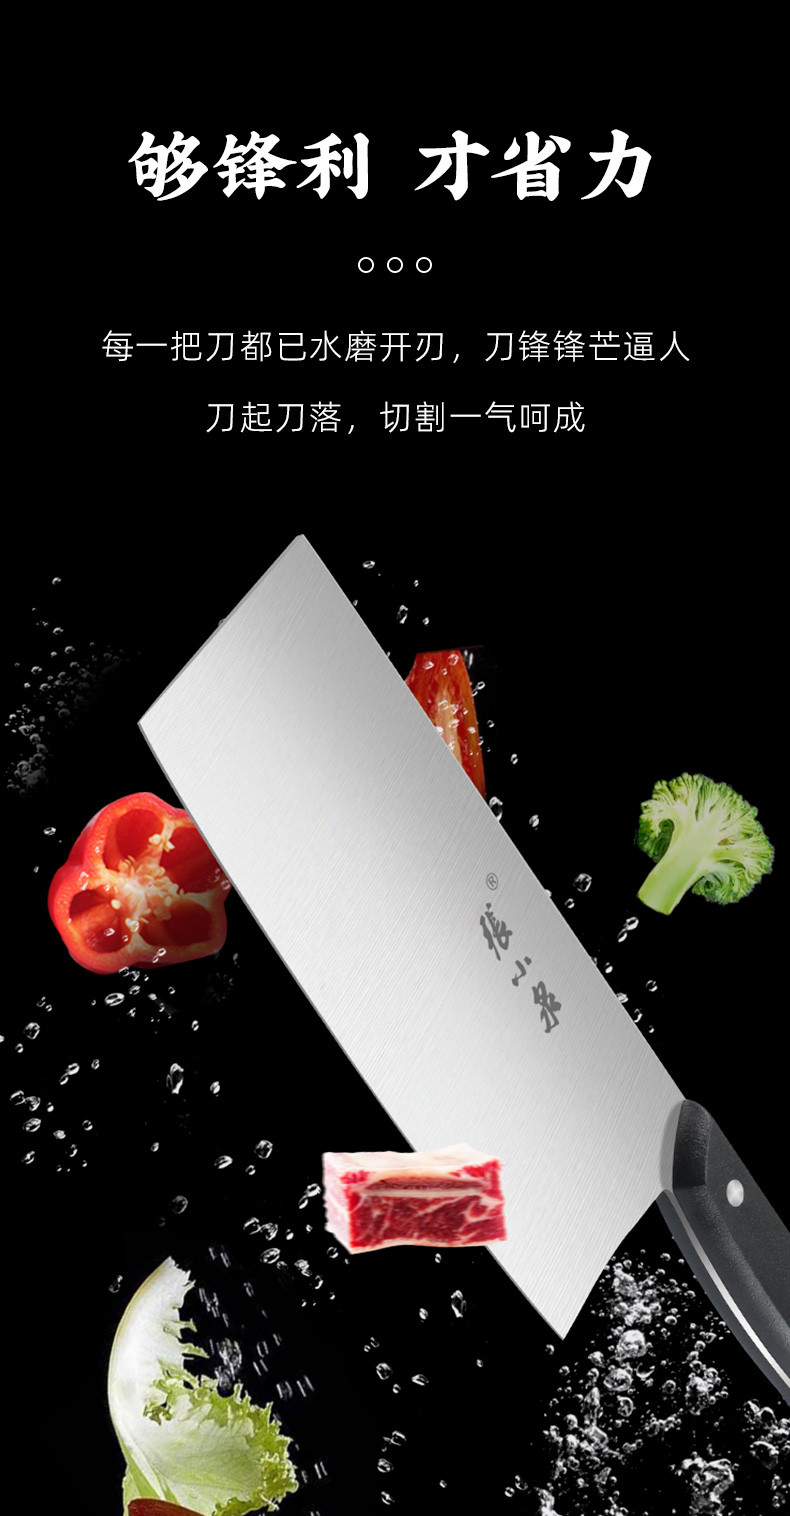 张小泉(Zhang Xiao Quan) 厨房刀具套装 家用切片刀切菜切肉不锈钢菜刀套装组合